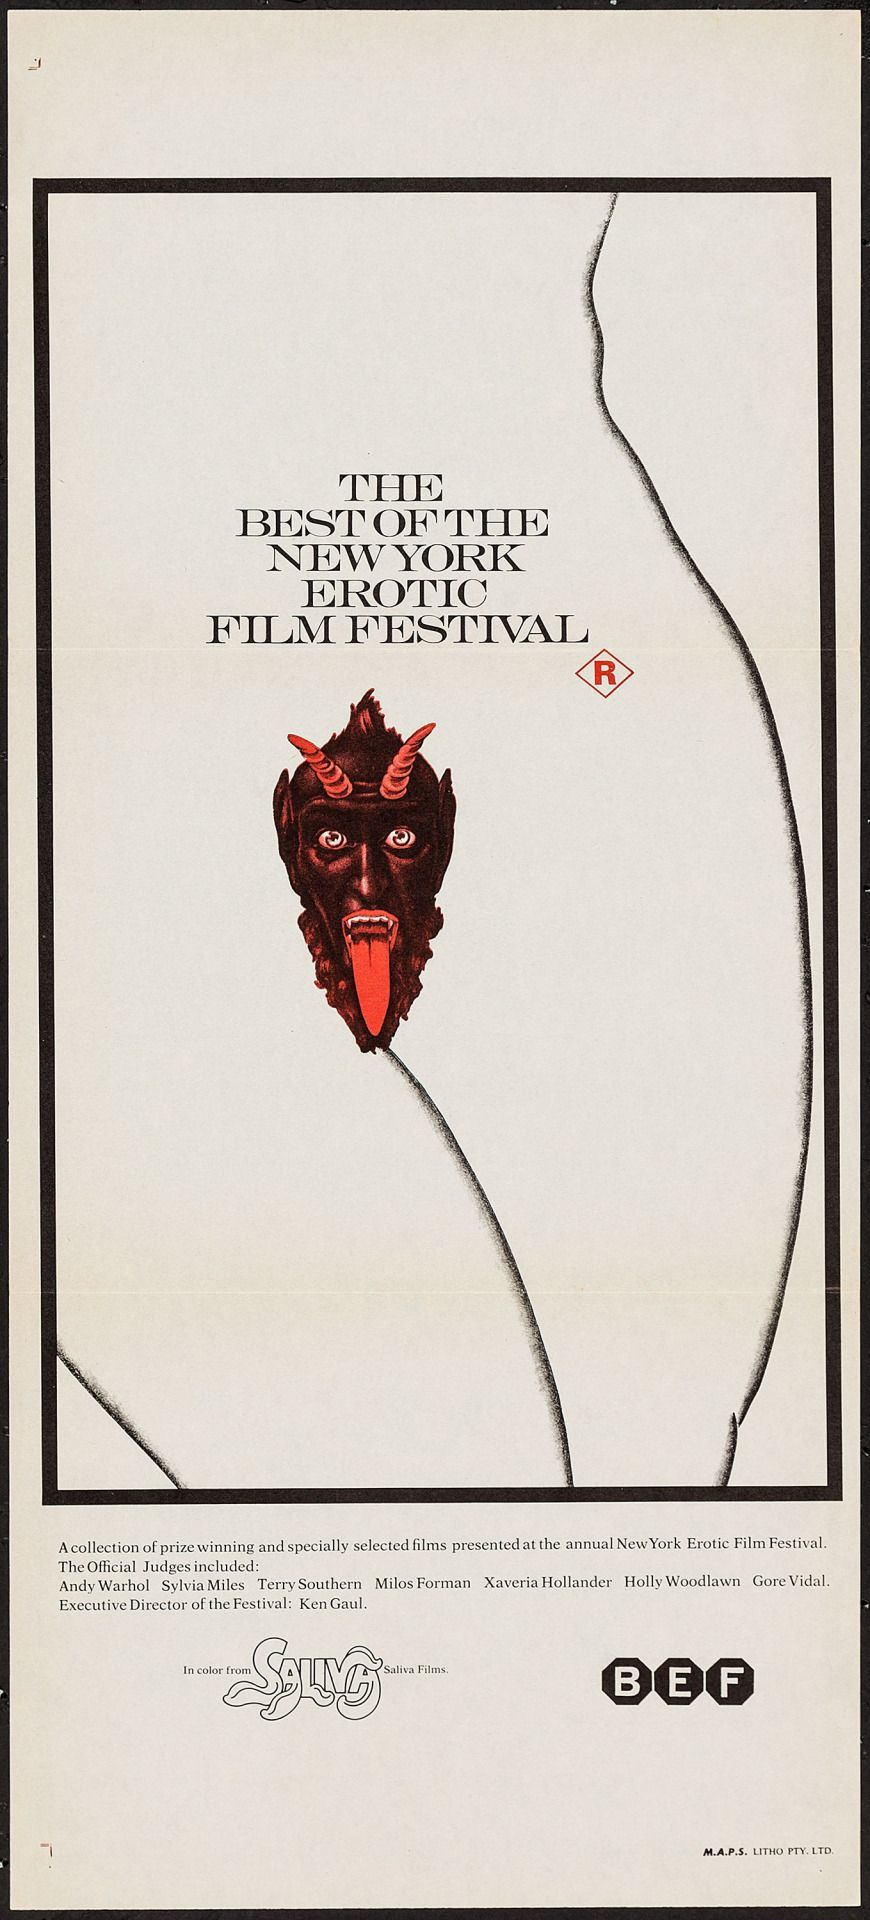 Bubbles reccomend The new york erotic film festival